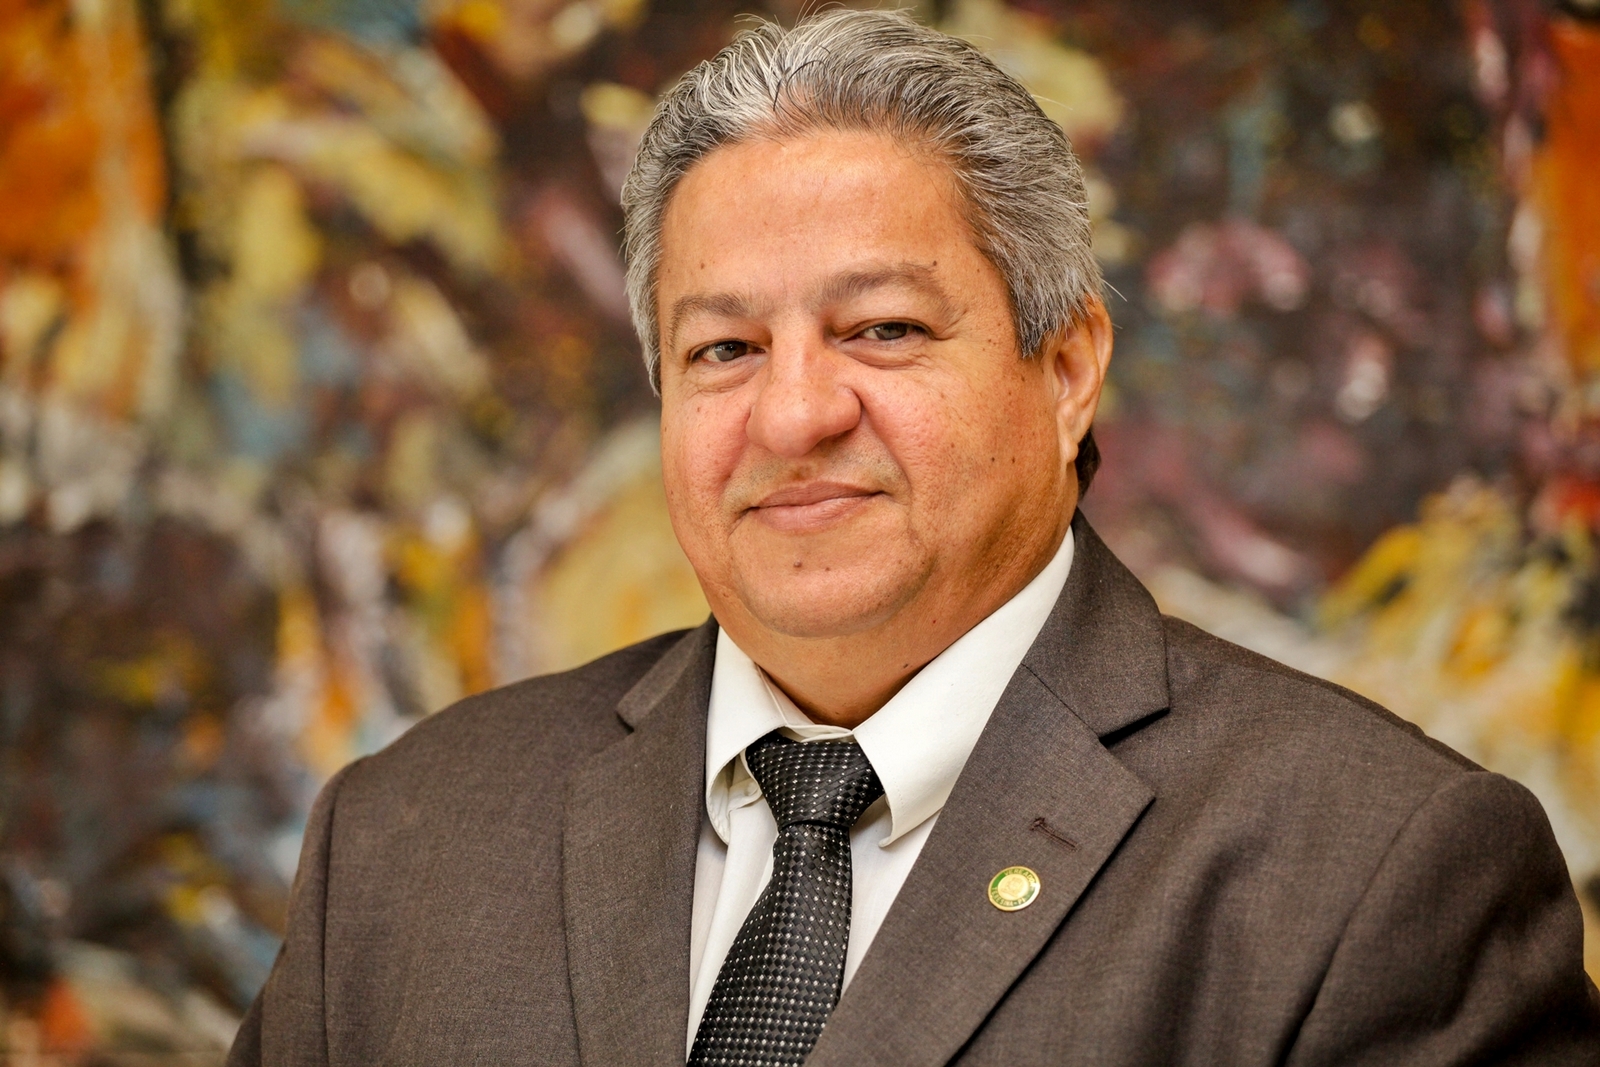 Vereador Gilberto Paixão (PT)